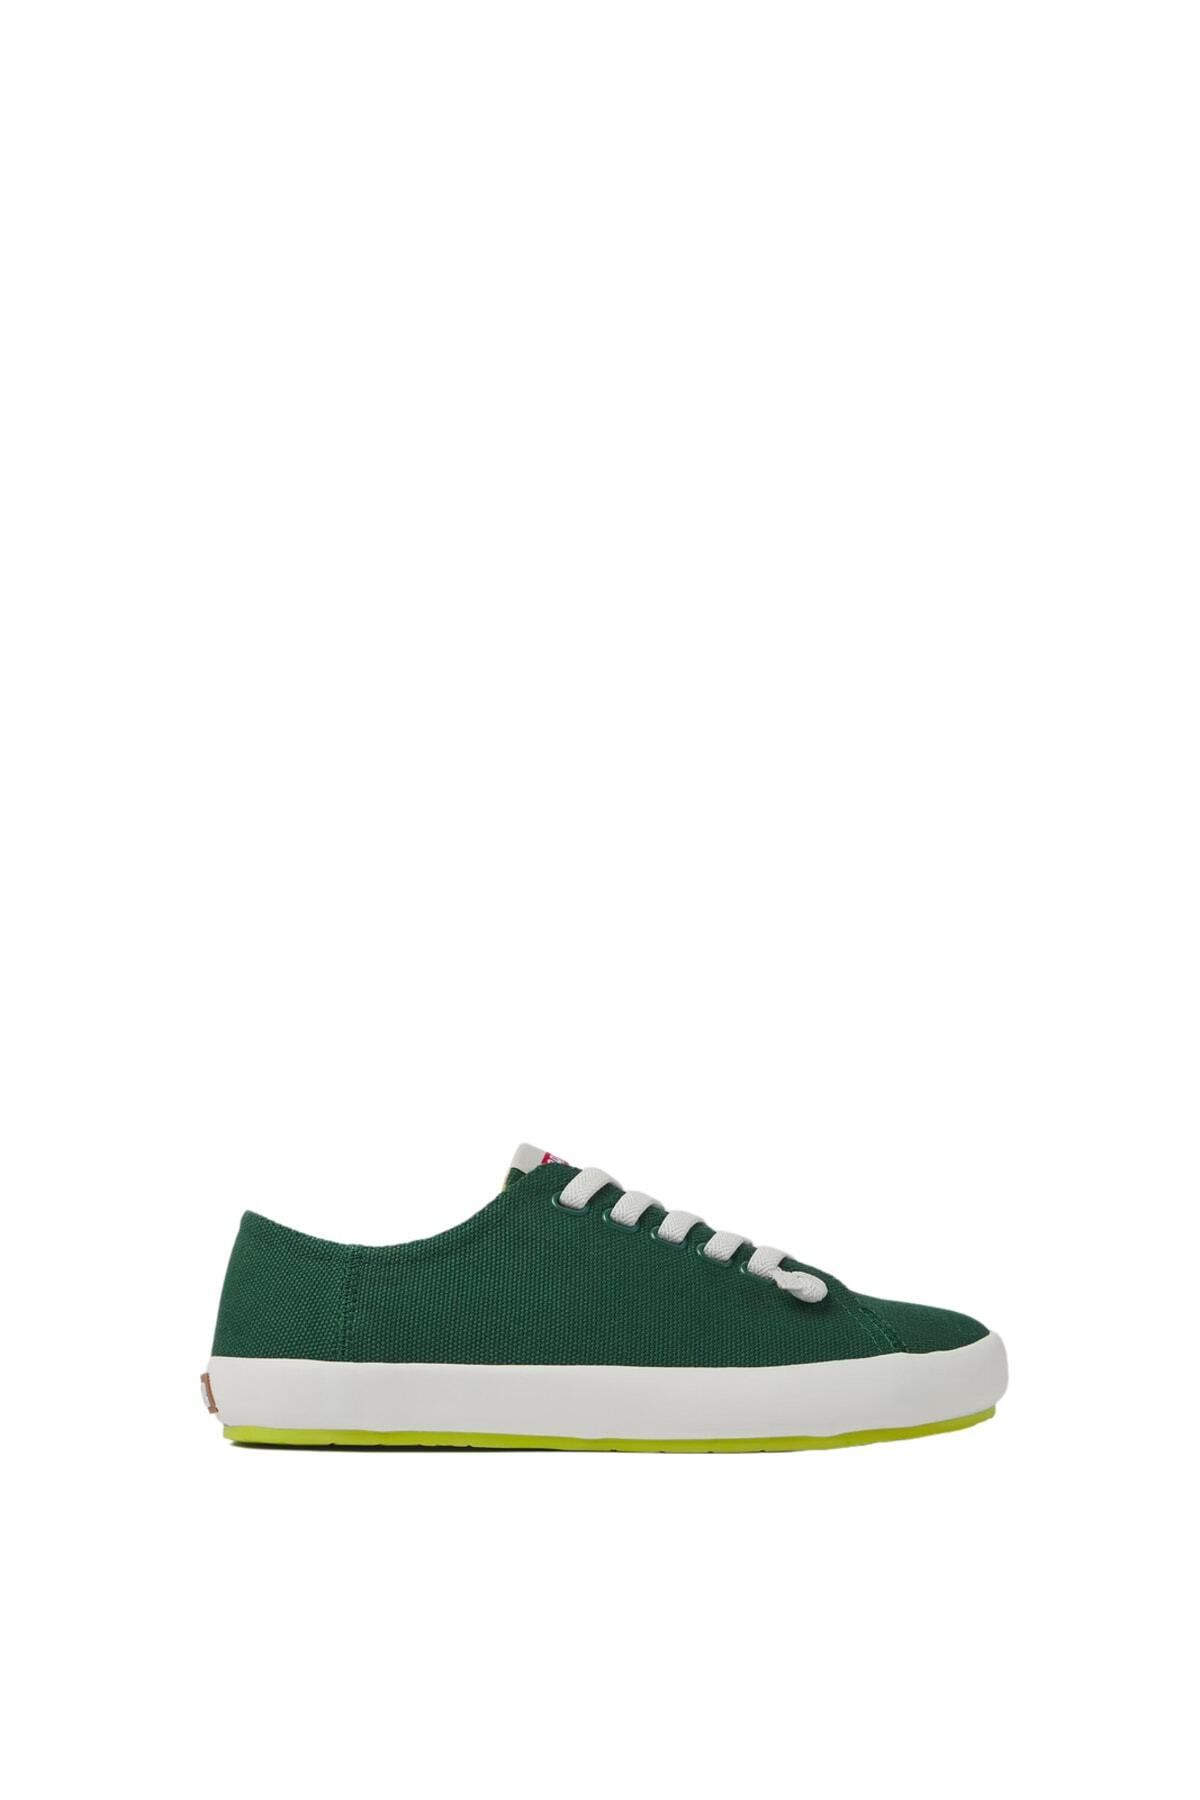 CAMPER Peu Rambla Vulcanizado Kadın Yeşil Sneaker - 21897